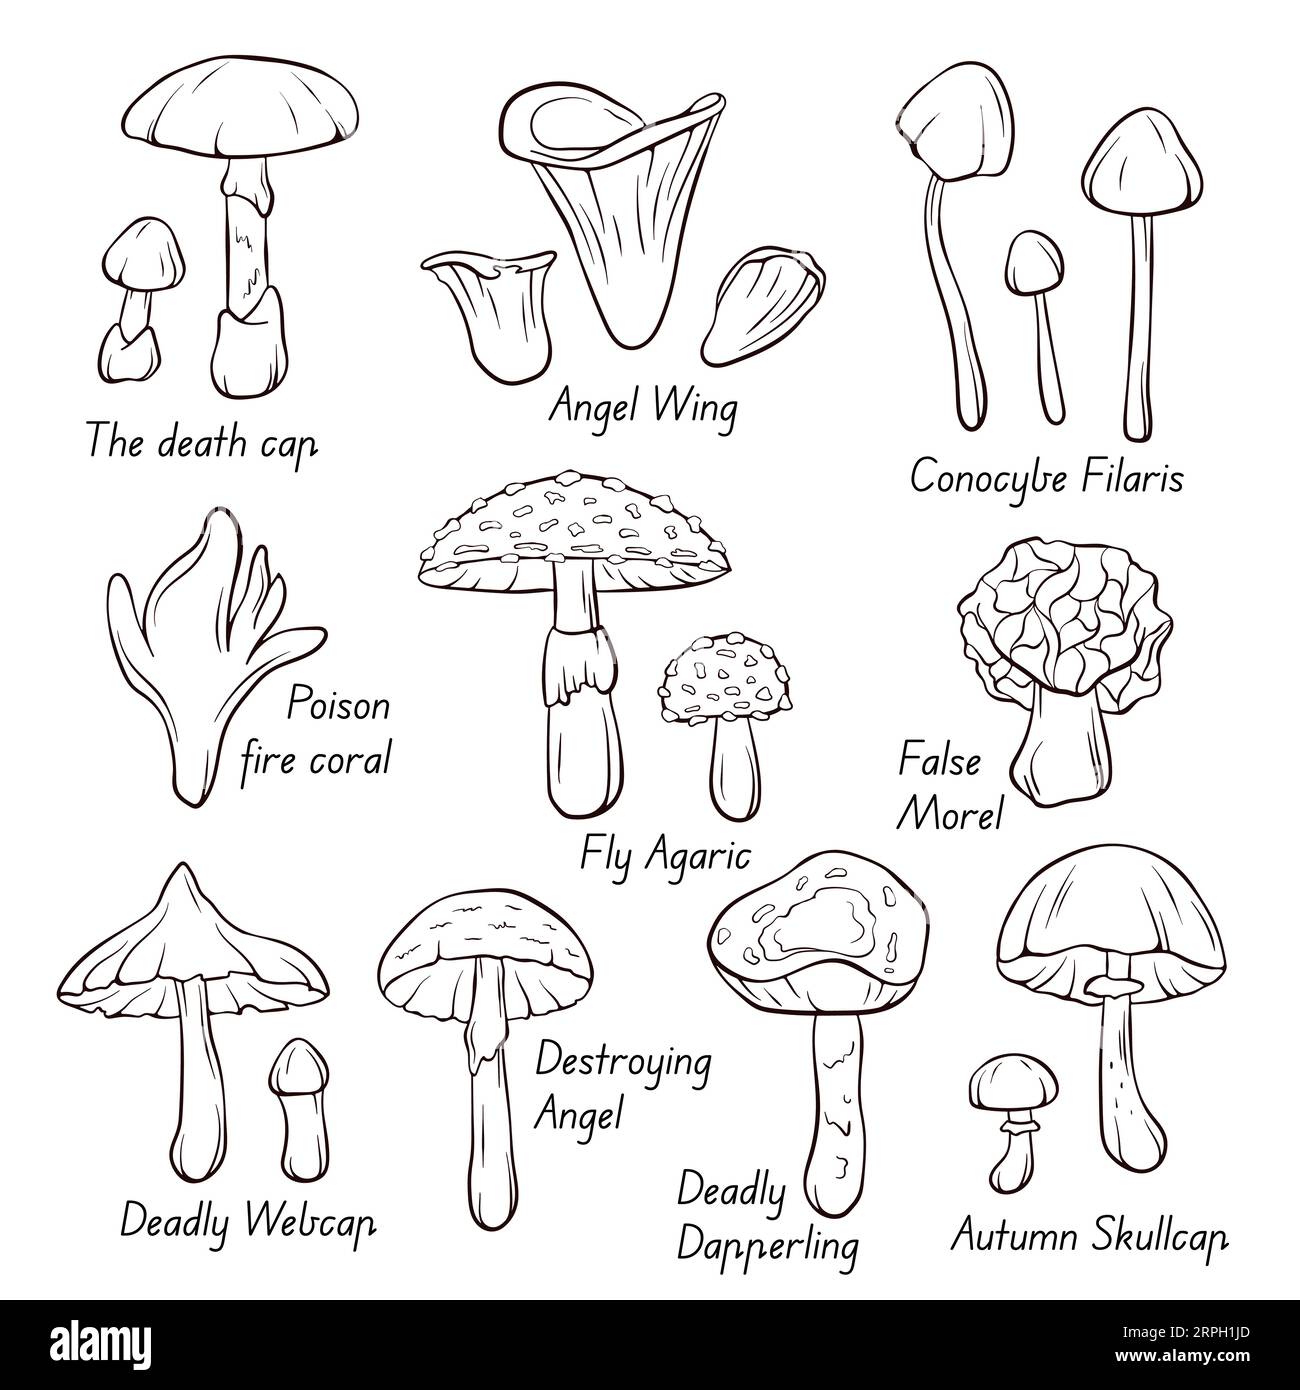 Icone inedibili della collezione di funghi nella grafica in linea, stile di contorno. Fly Agaric, Autumn Skullcap, Deadly Webcap, False Morel, Poison Fire Coral. Vettore Illustrazione Vettoriale